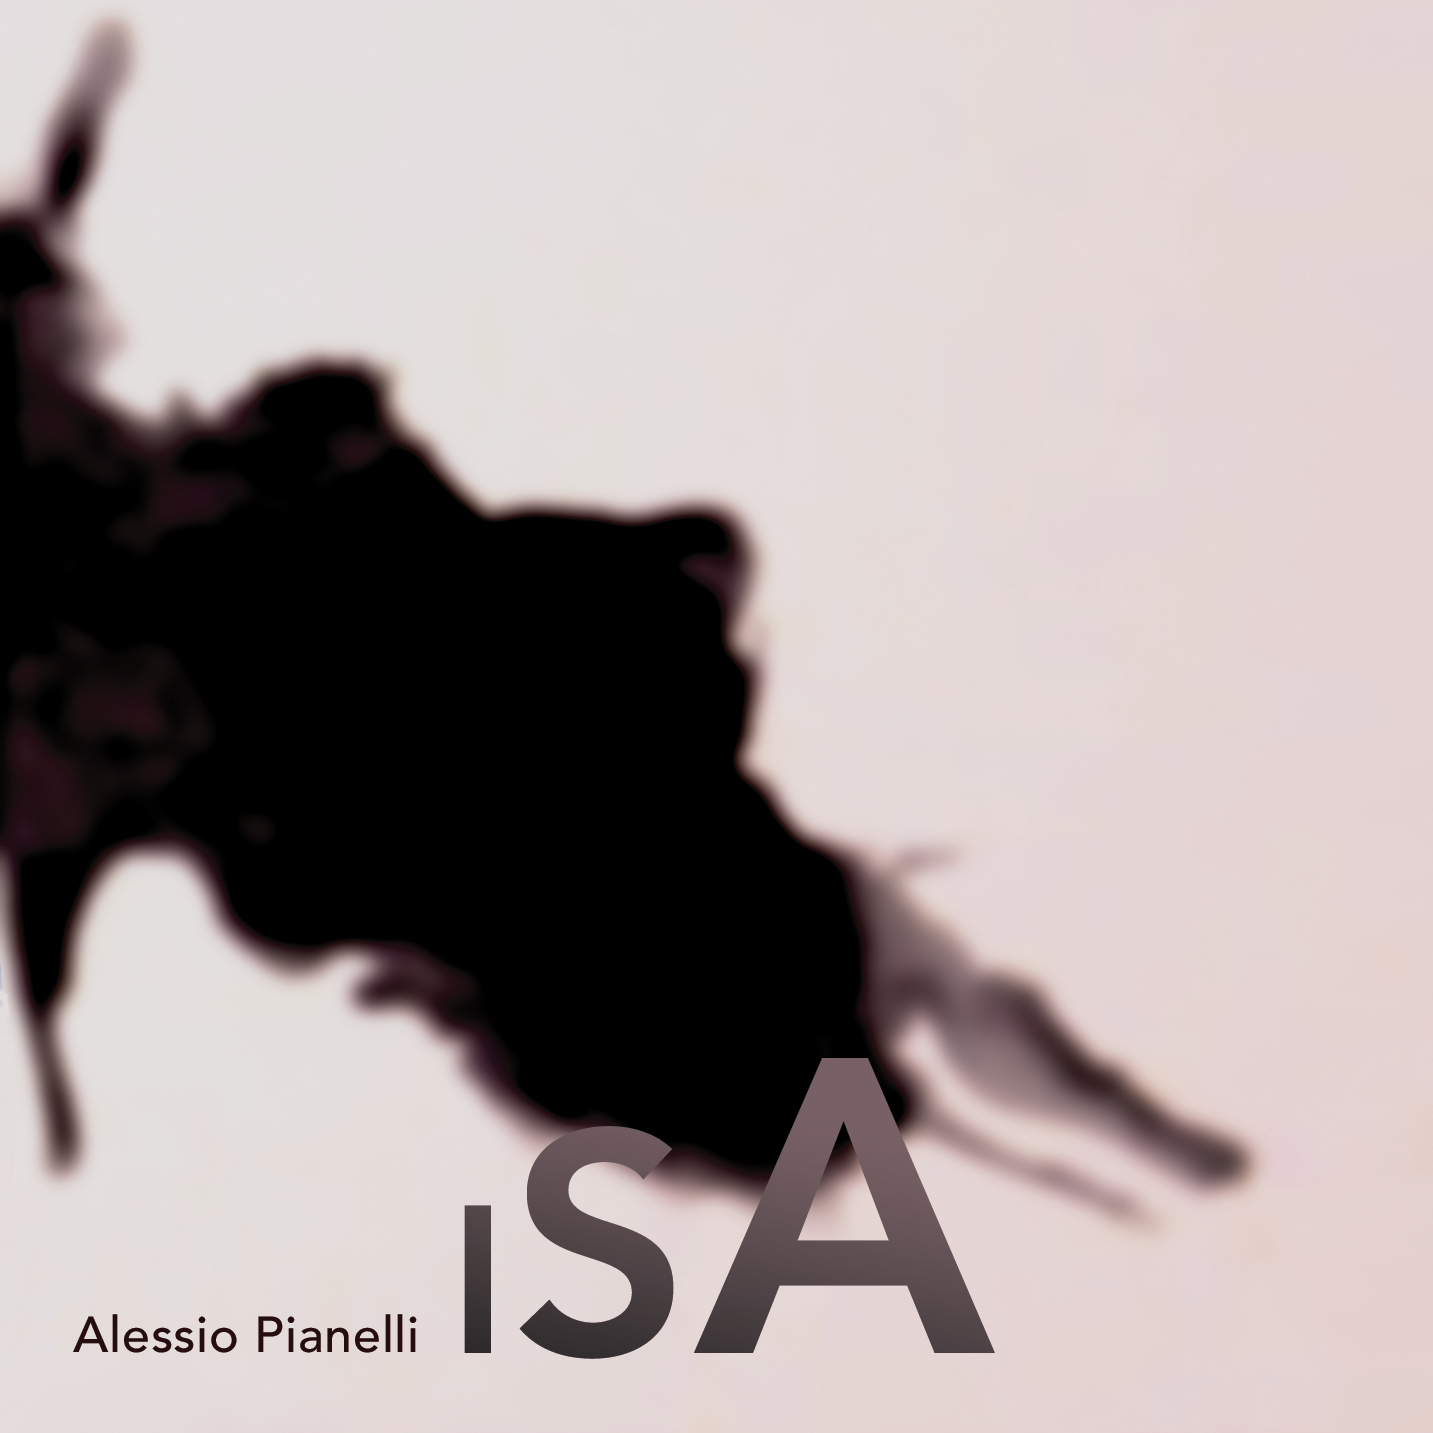 Alessio Pianelli - ISA - album cover - cellist - cello - violoncello - Almendra Music